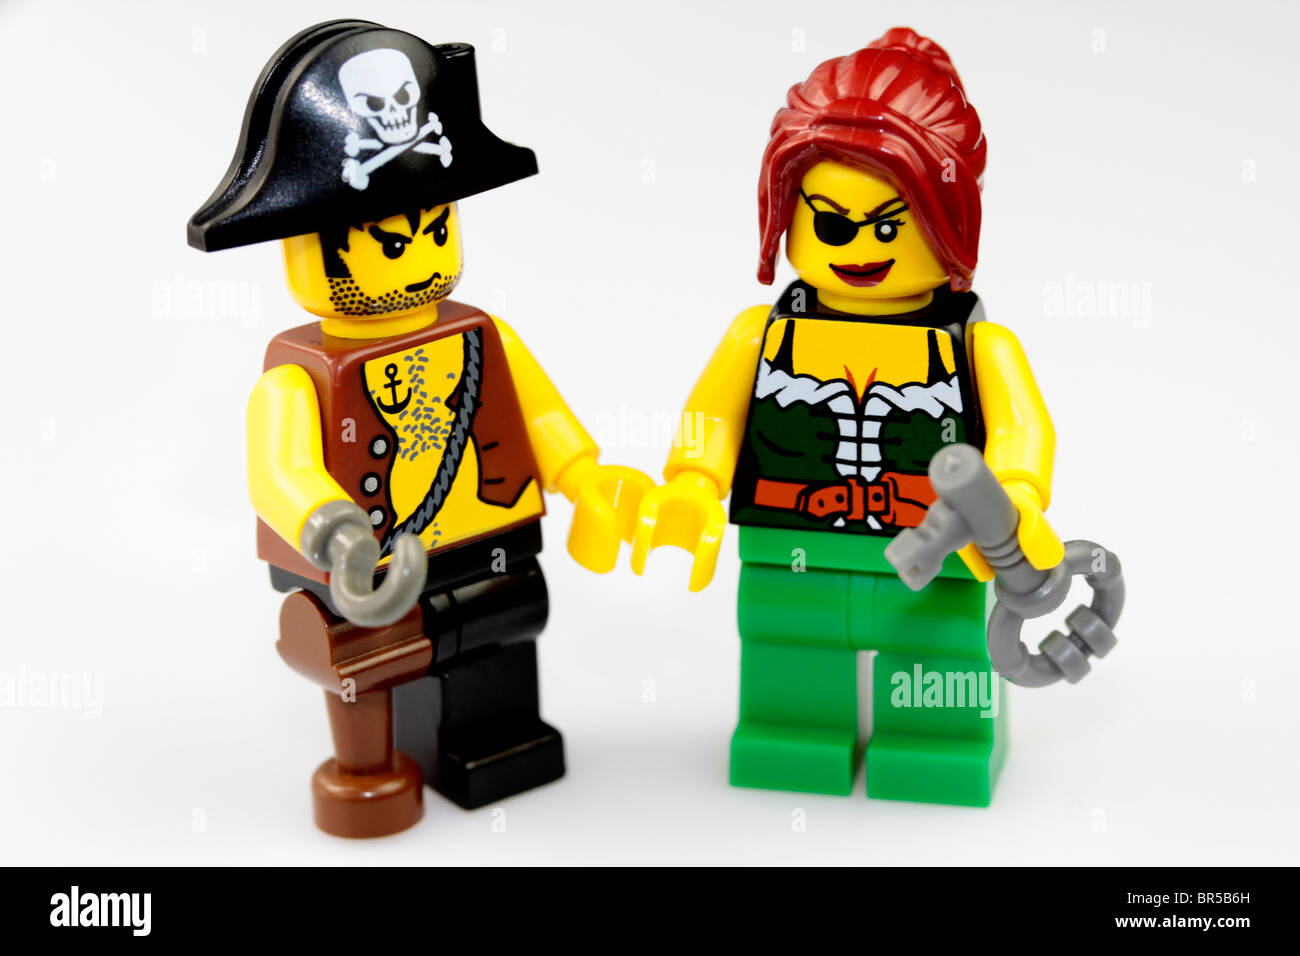 Lego man woman immagini e fotografie stock ad alta risoluzione - Alamy